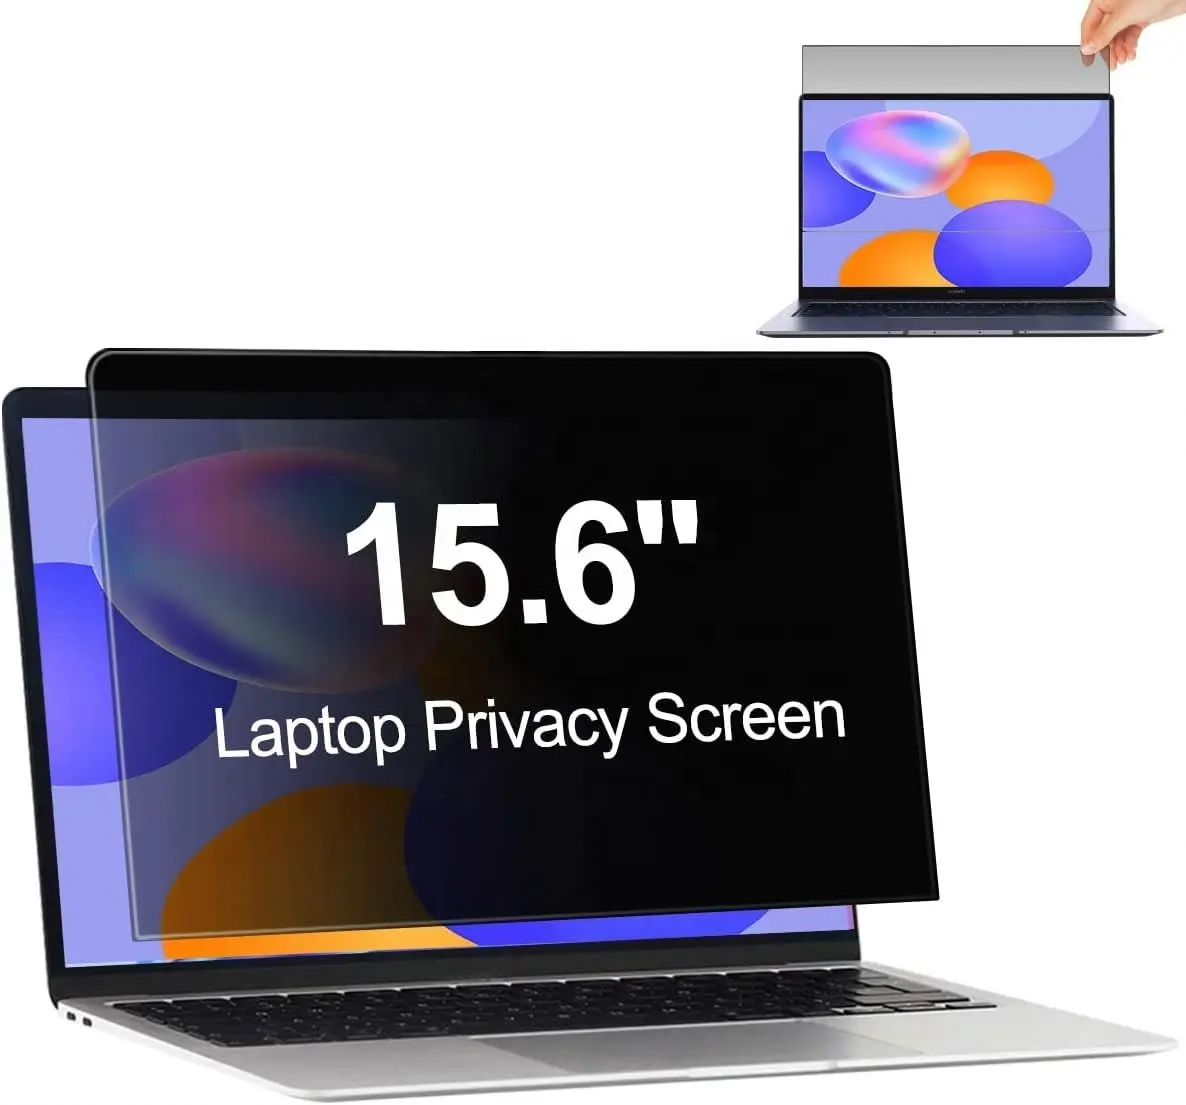 15.6 "gizlilik filtresi ekran koruyucu Anti-Spy/parlama filmi ile 15.6 inç geniş ekran dizüstü Laptop için 16:9 boy oranı